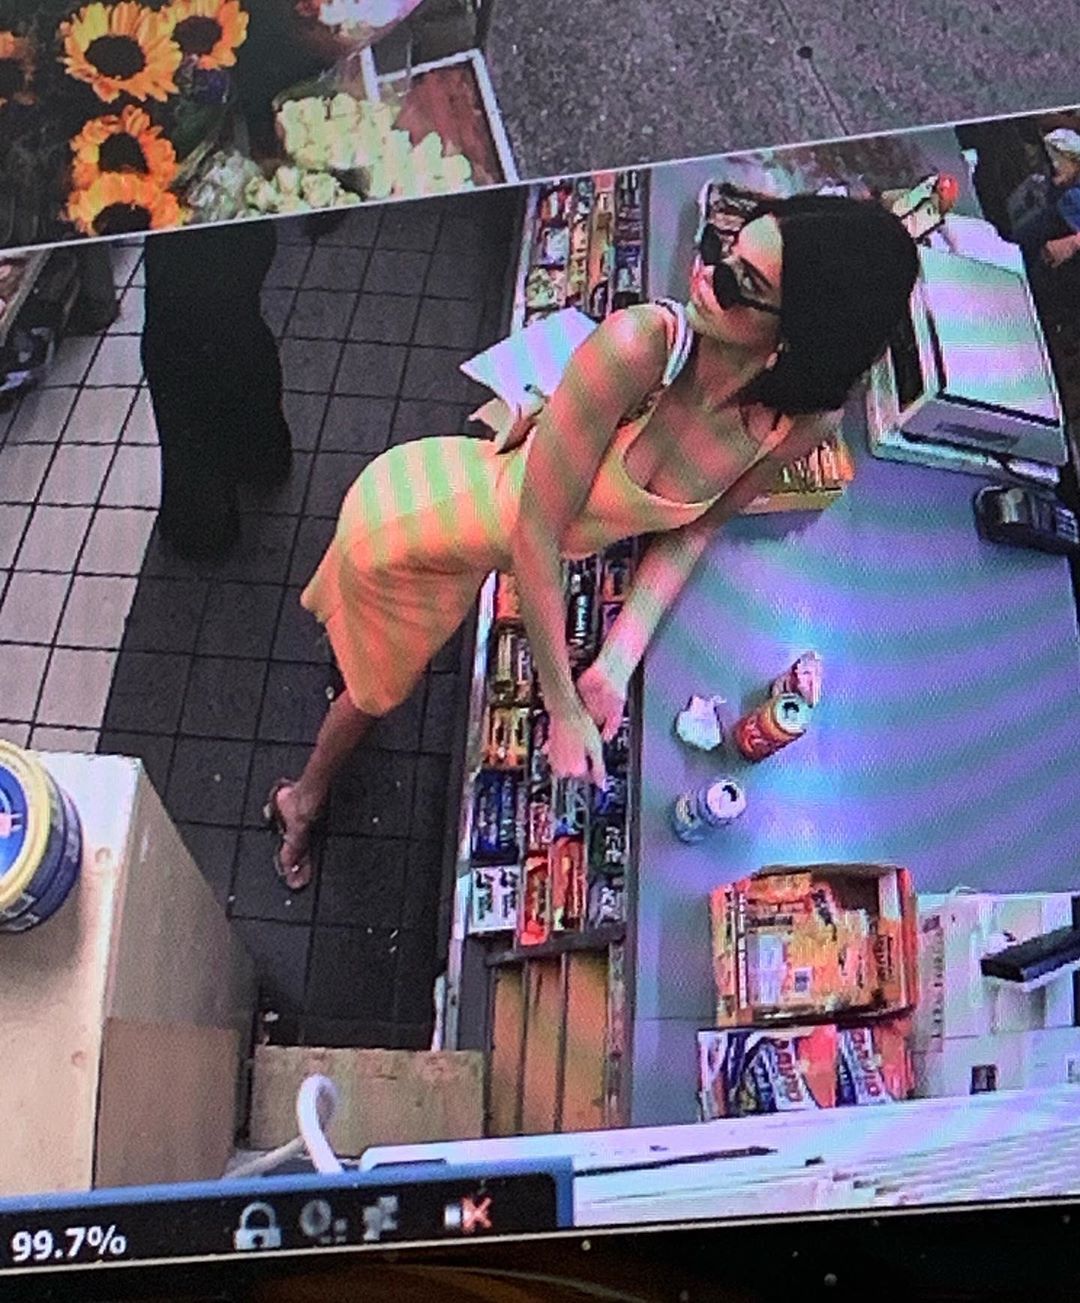 Seksi Memakai Dress Orange, Kendall Jenner Diduga Ada 'Modus' Ini